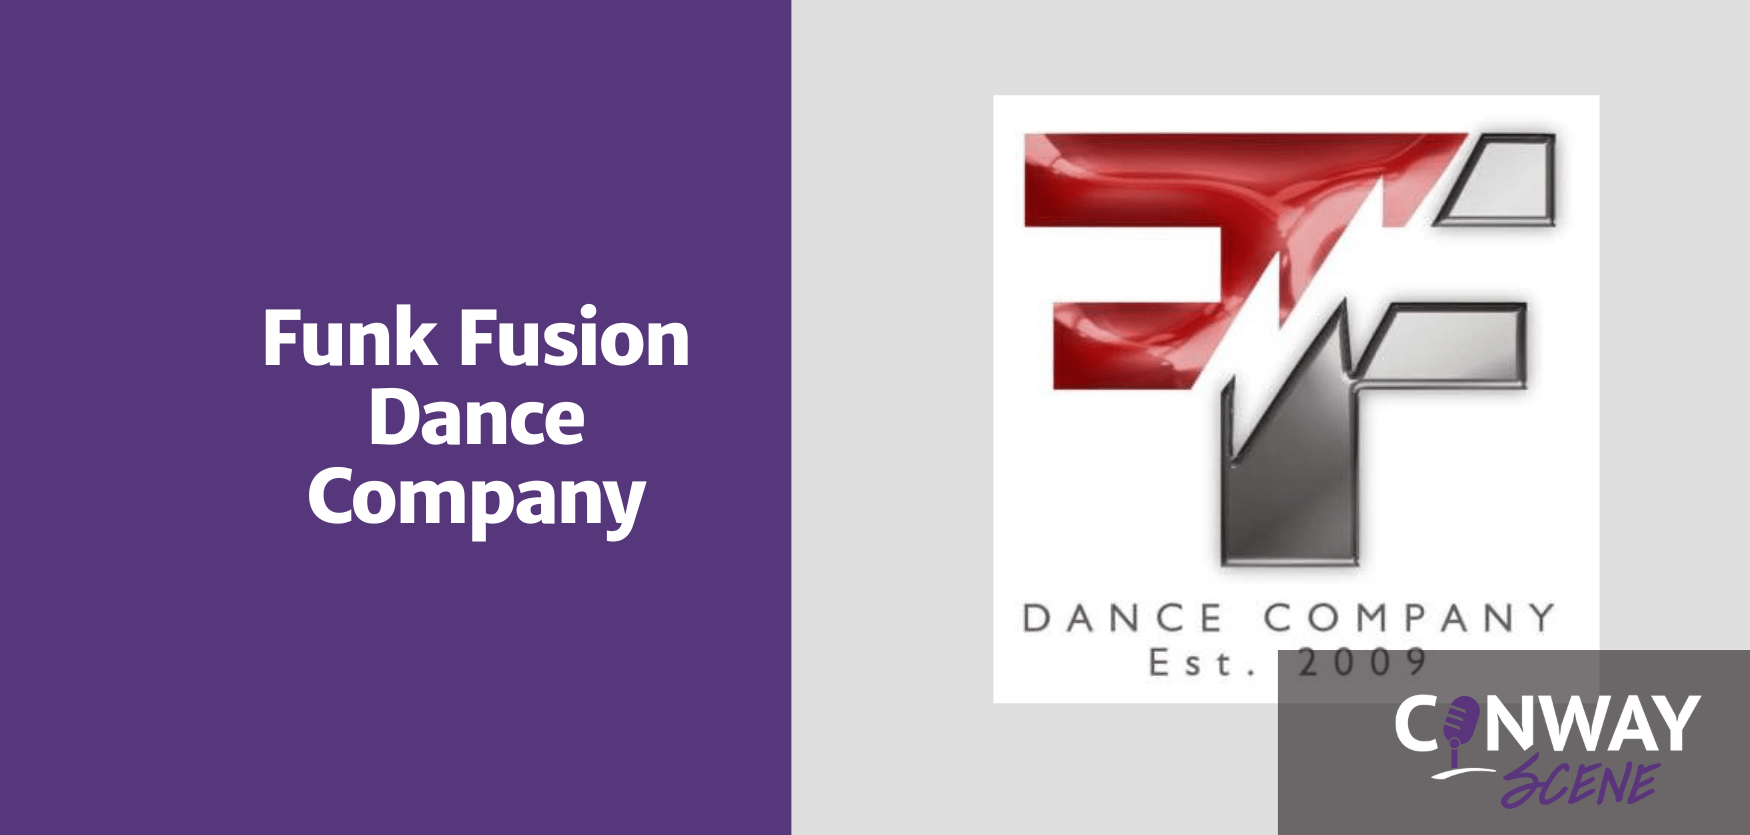 Funk Fusion Dance Company